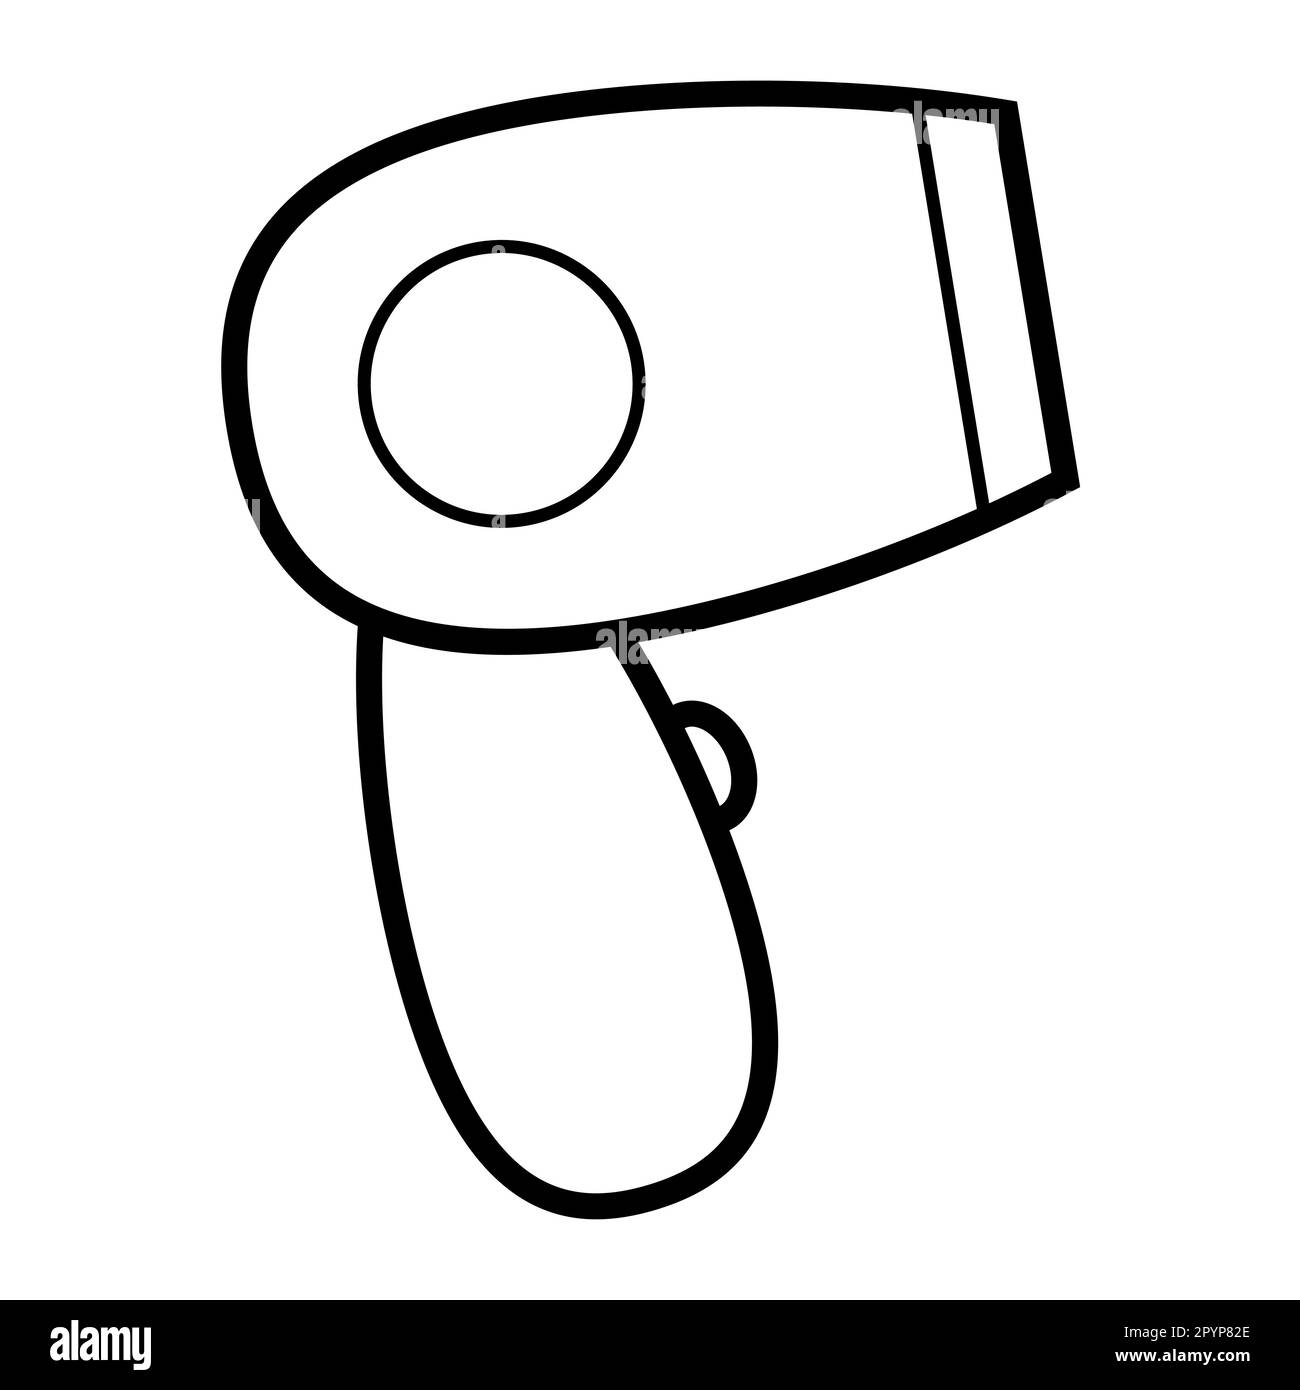 Icona bianco e nero semplice lineare elegante asciugacapelli elettrico, apparecchio domestico per l'asciugatura, lo styling e l'acconciatura dei capelli. Illustrazione vettoriale. Illustrazione Vettoriale